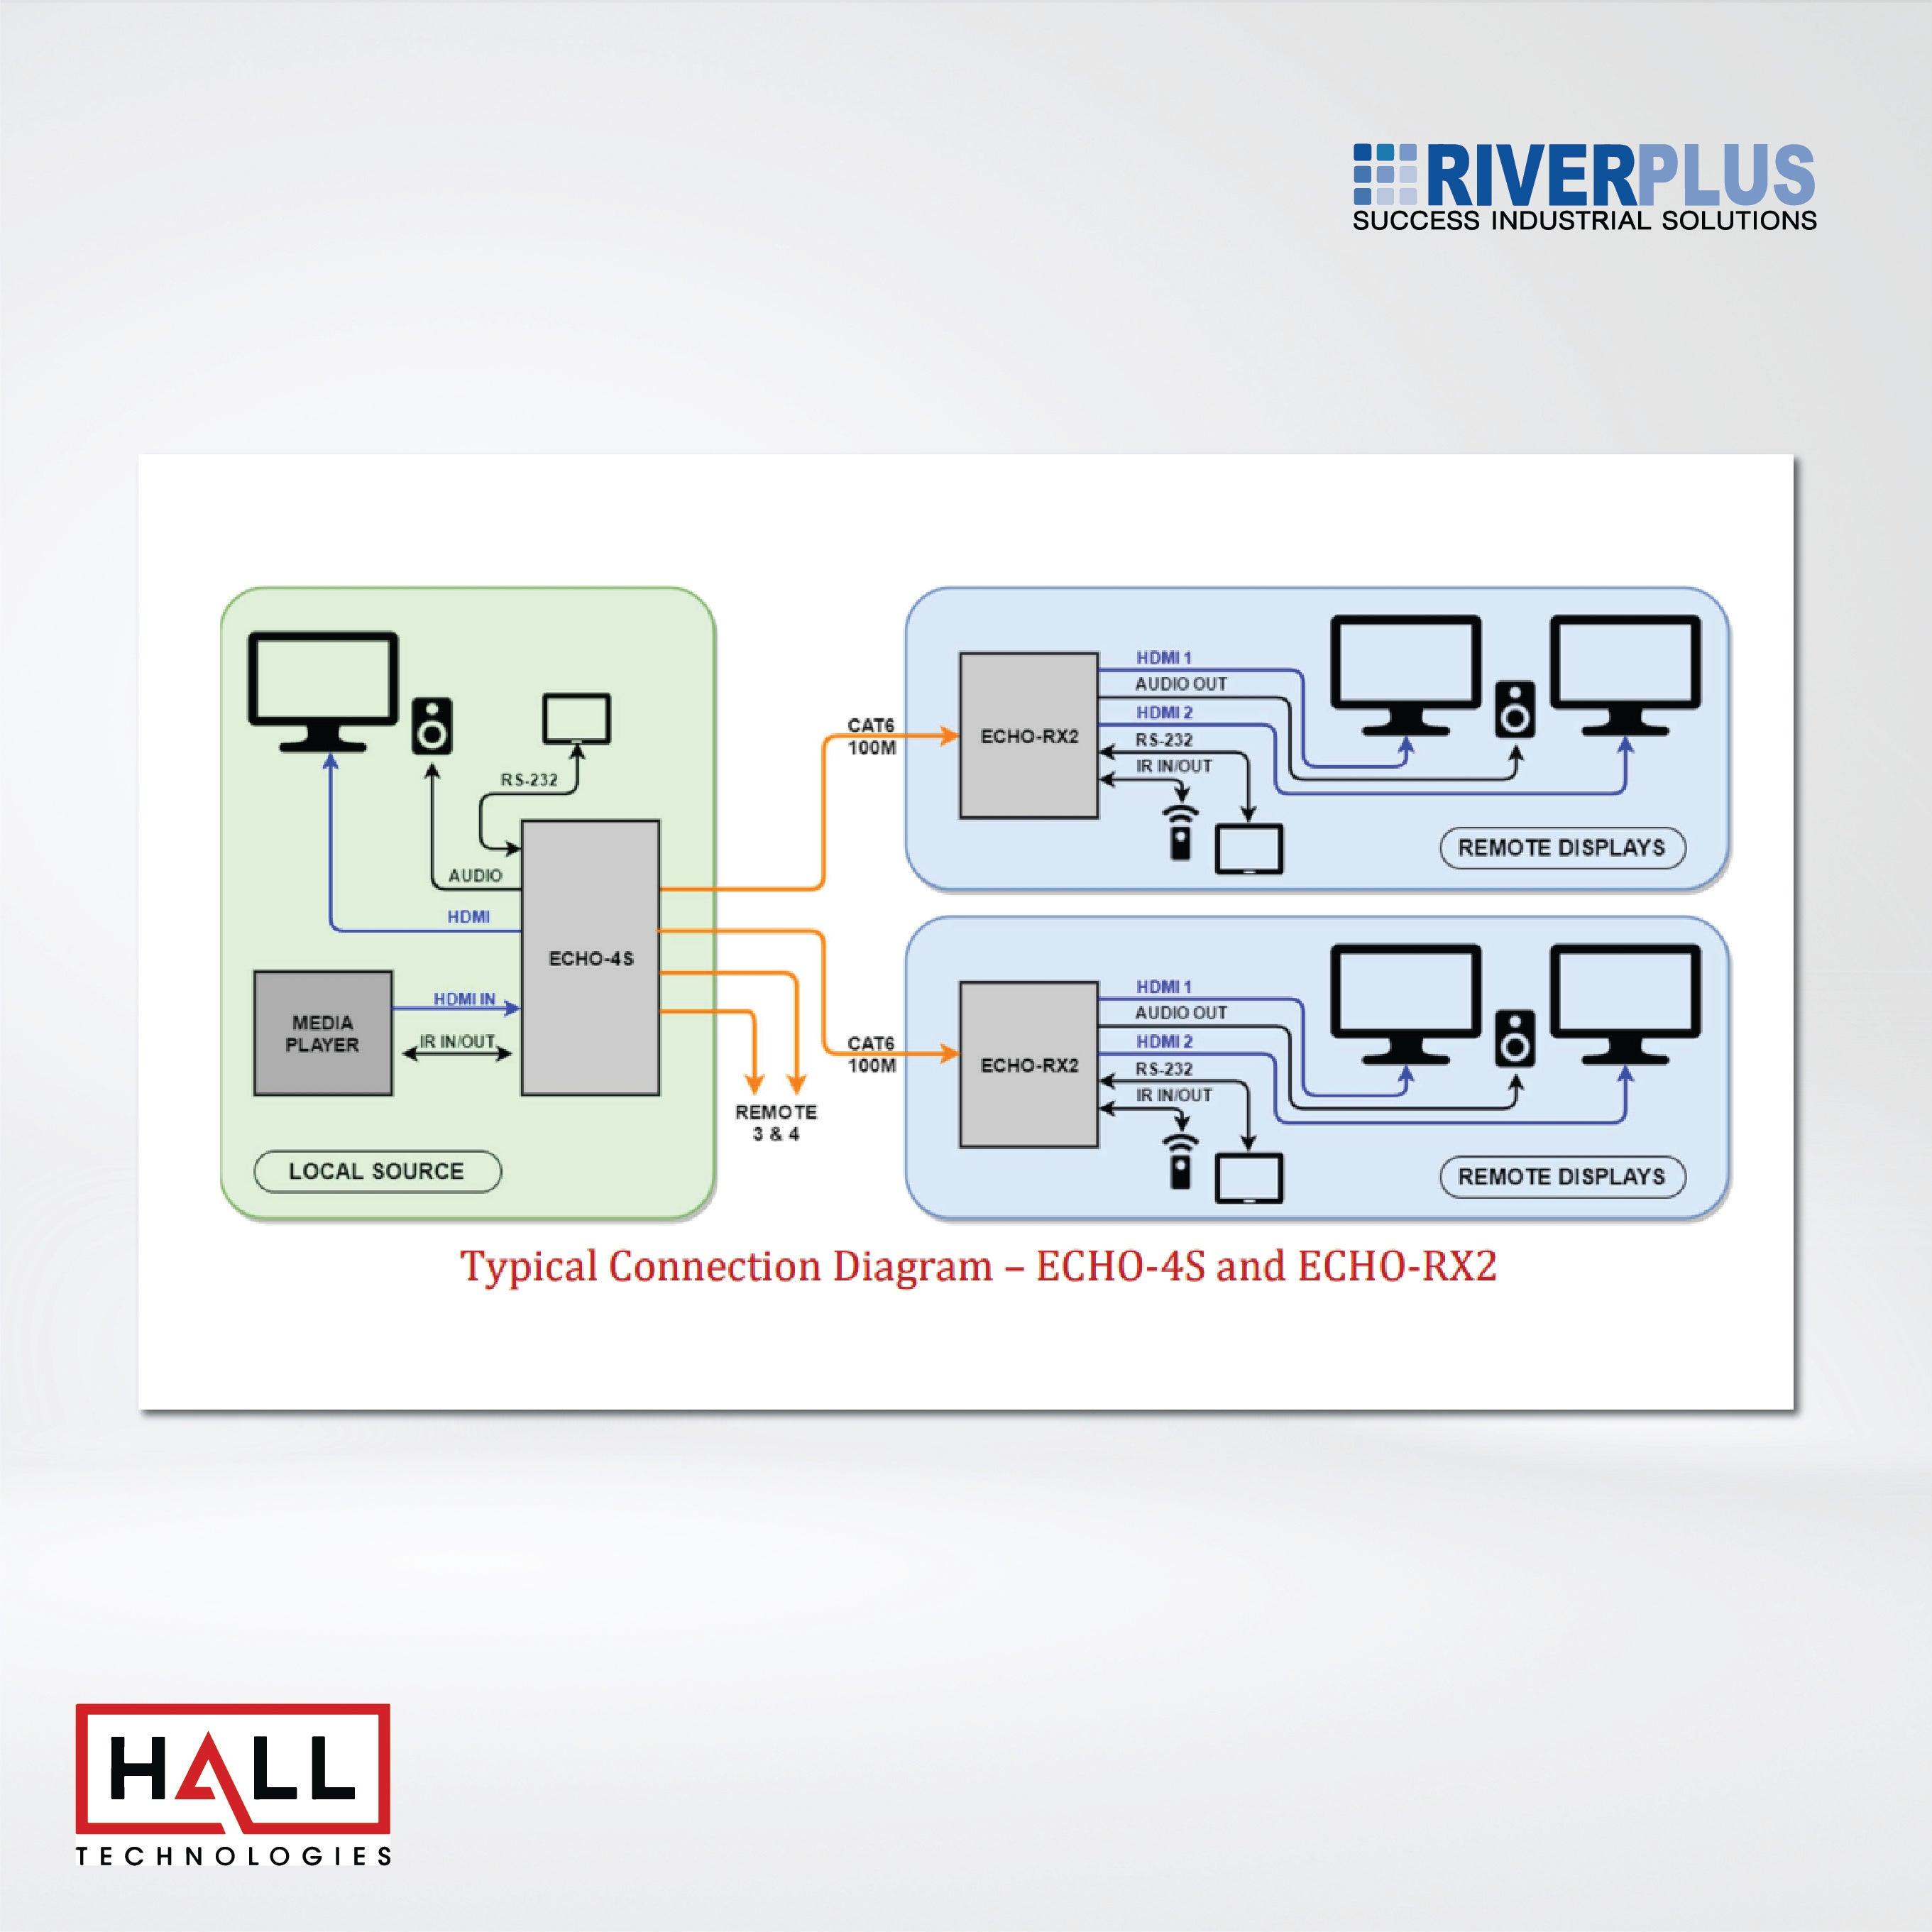 ECHO-8S 8 Channel HDBaseT™ Splitter (Sender) - Riverplus